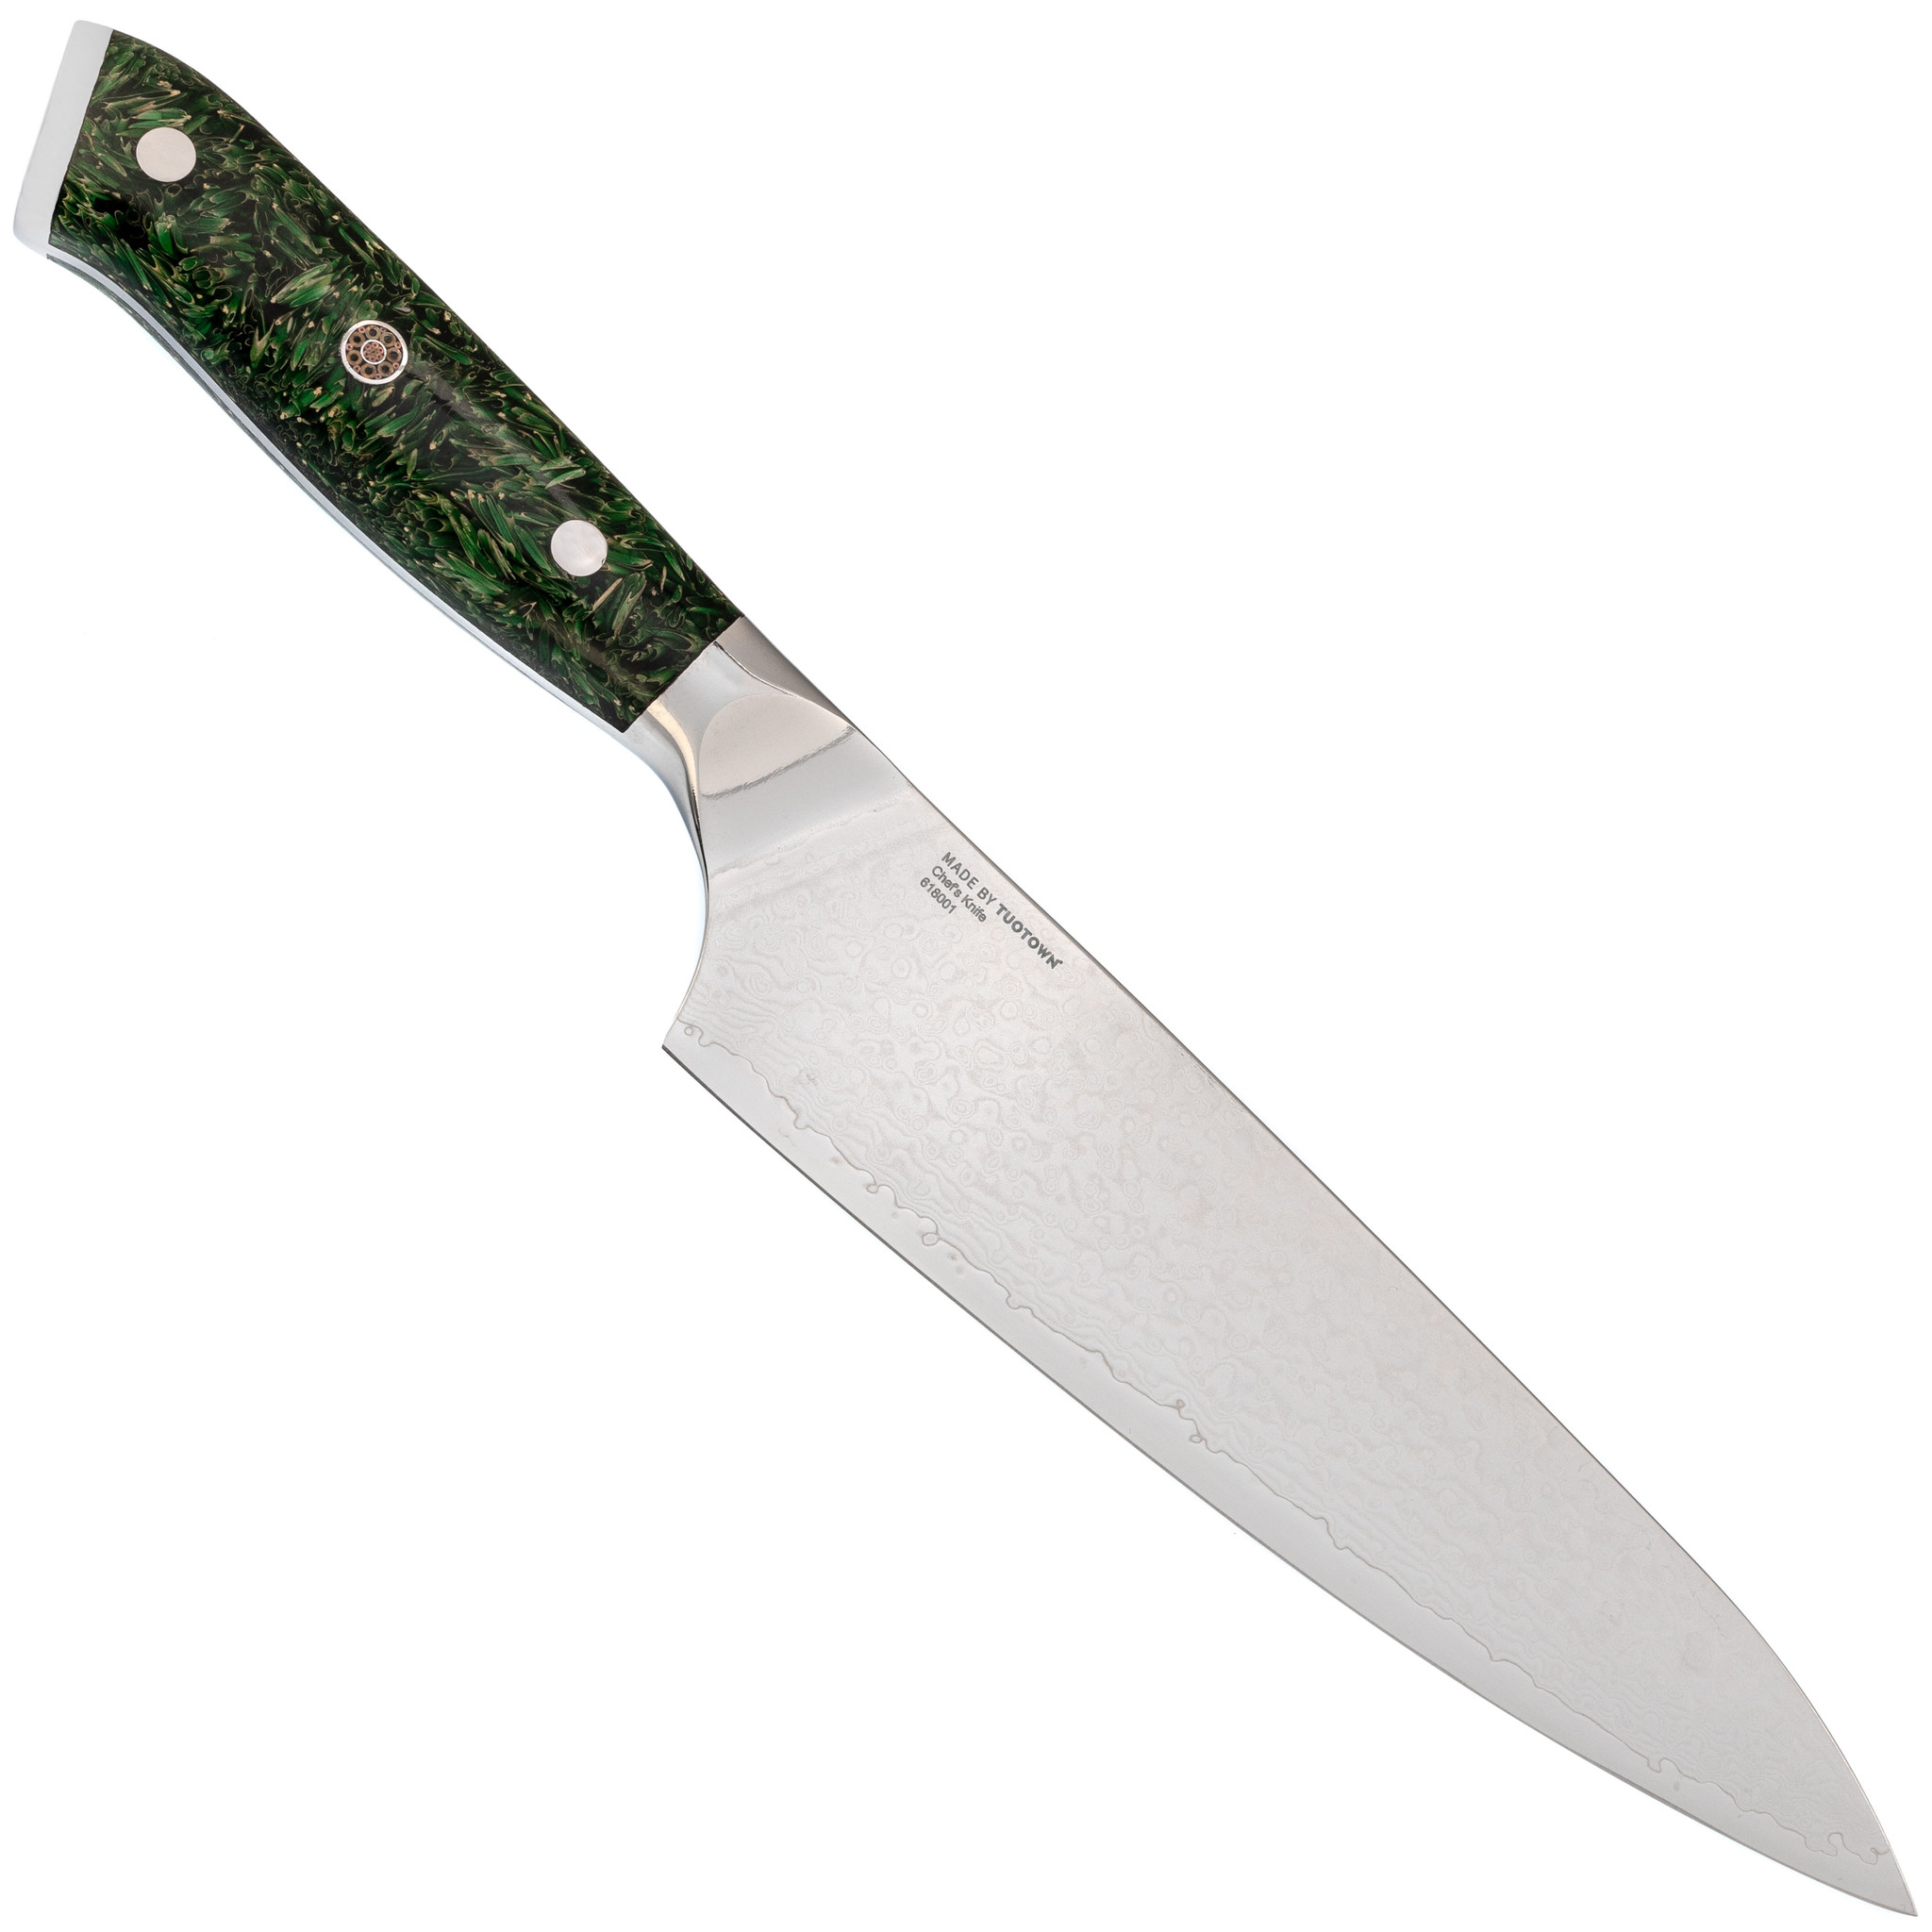 Кухонный нож Шеф Tuotown, сталь VG10, обкладка Damascus, рукоять акрил, зеленый - фото 3